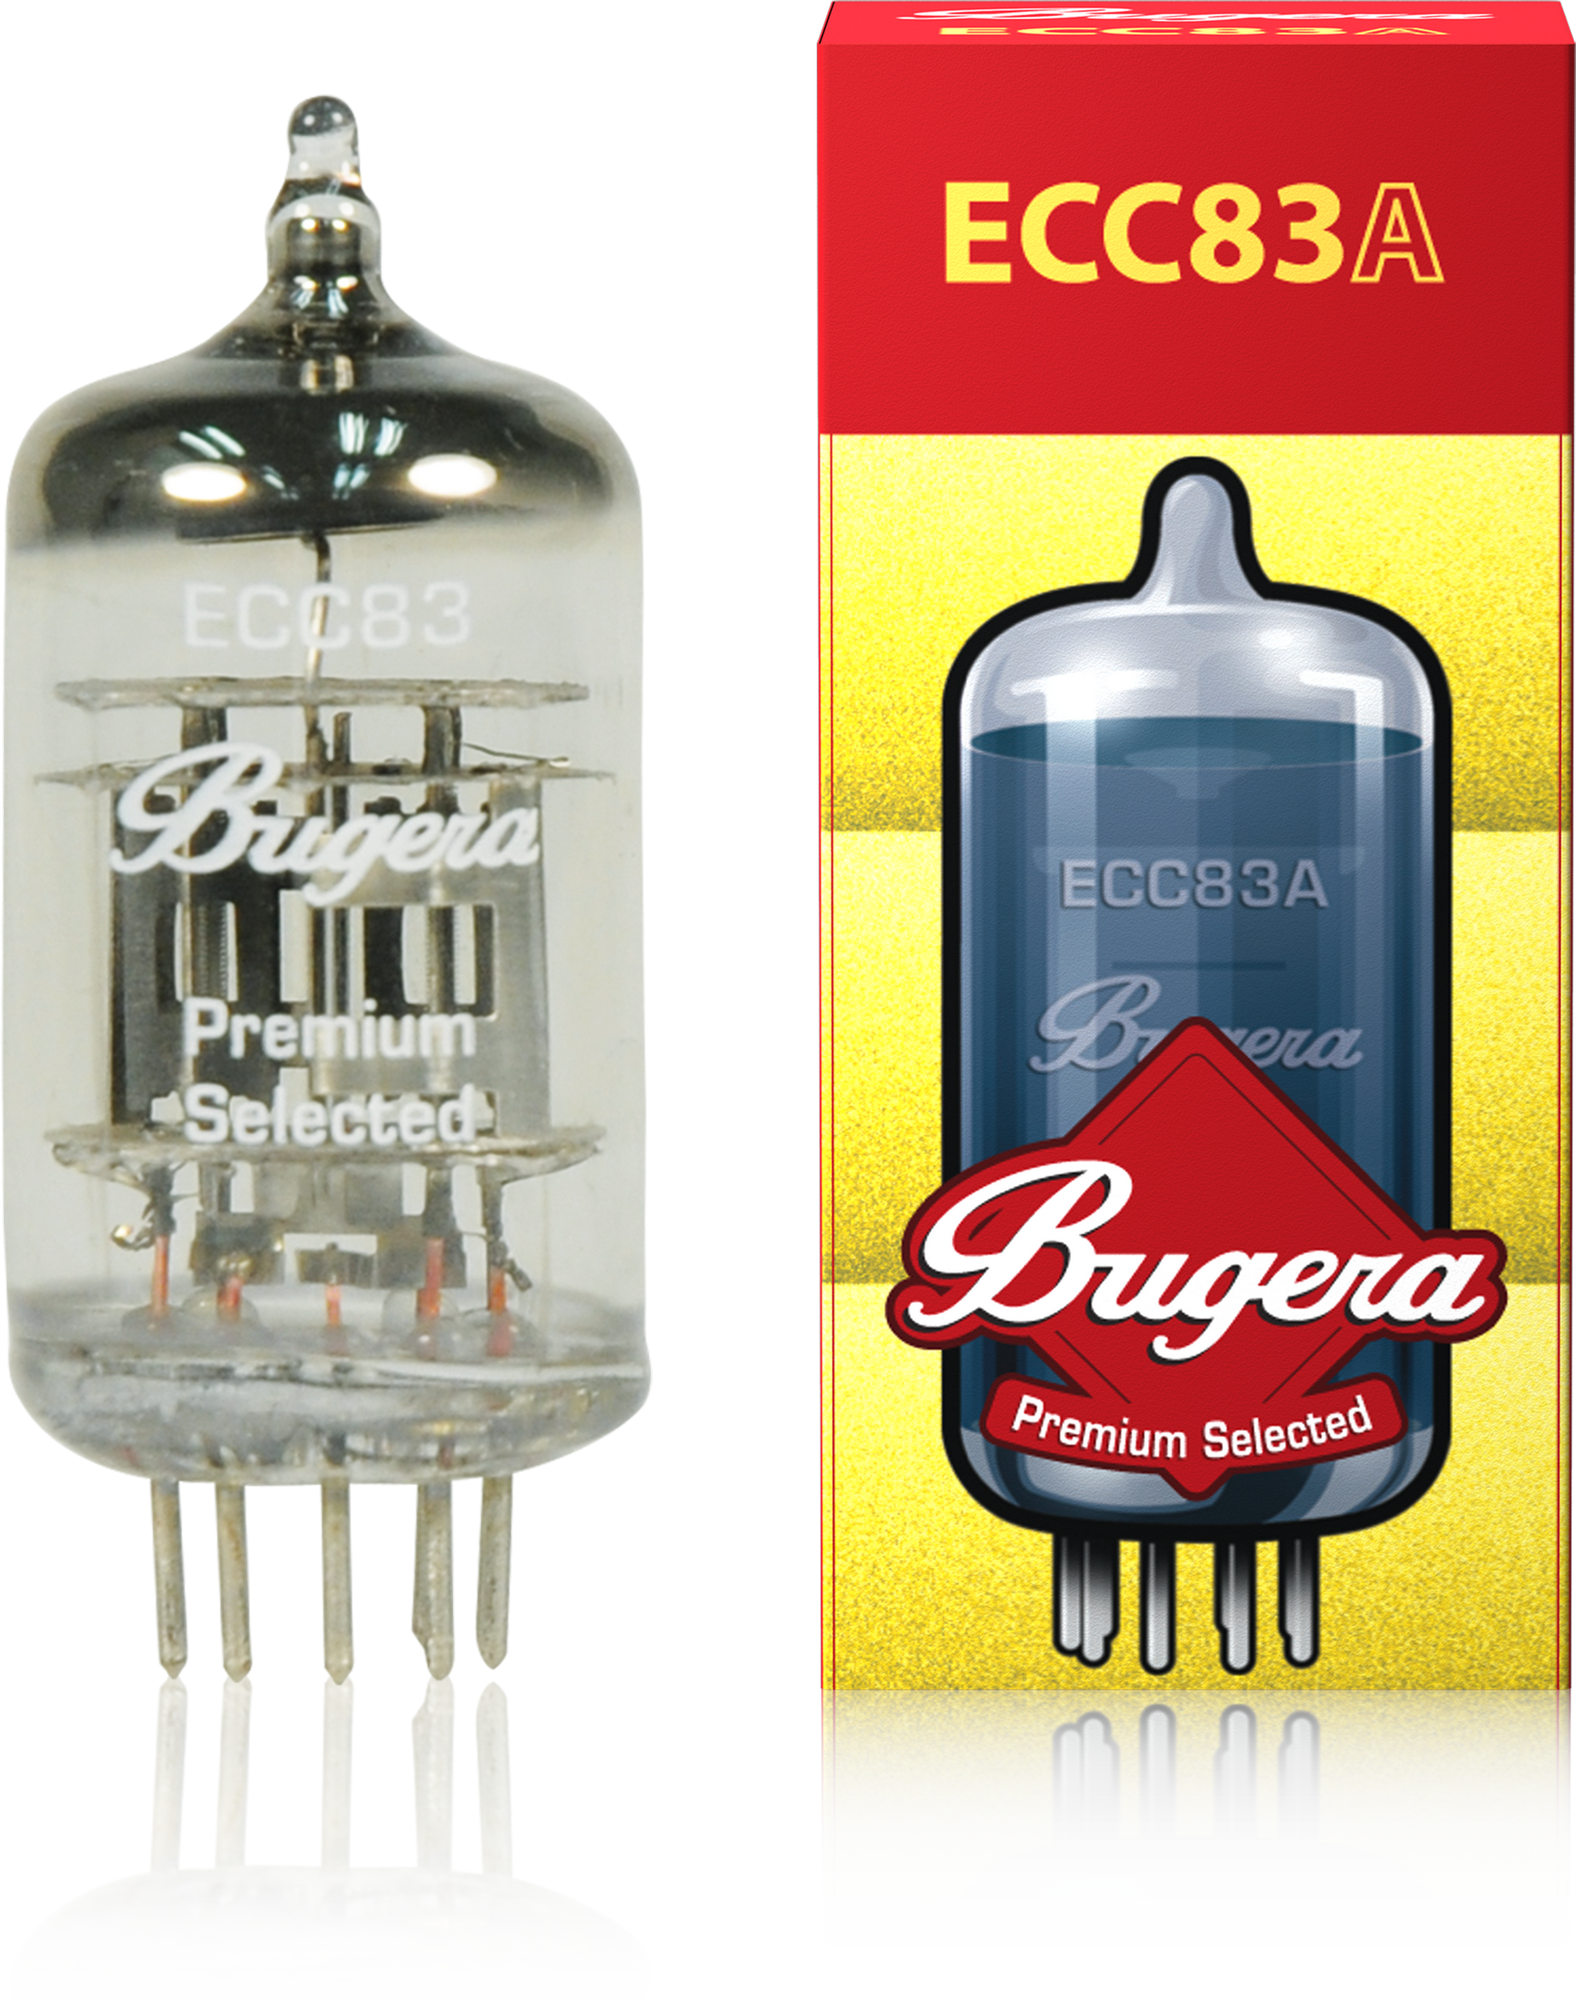 Bugera | Product | ECC83A